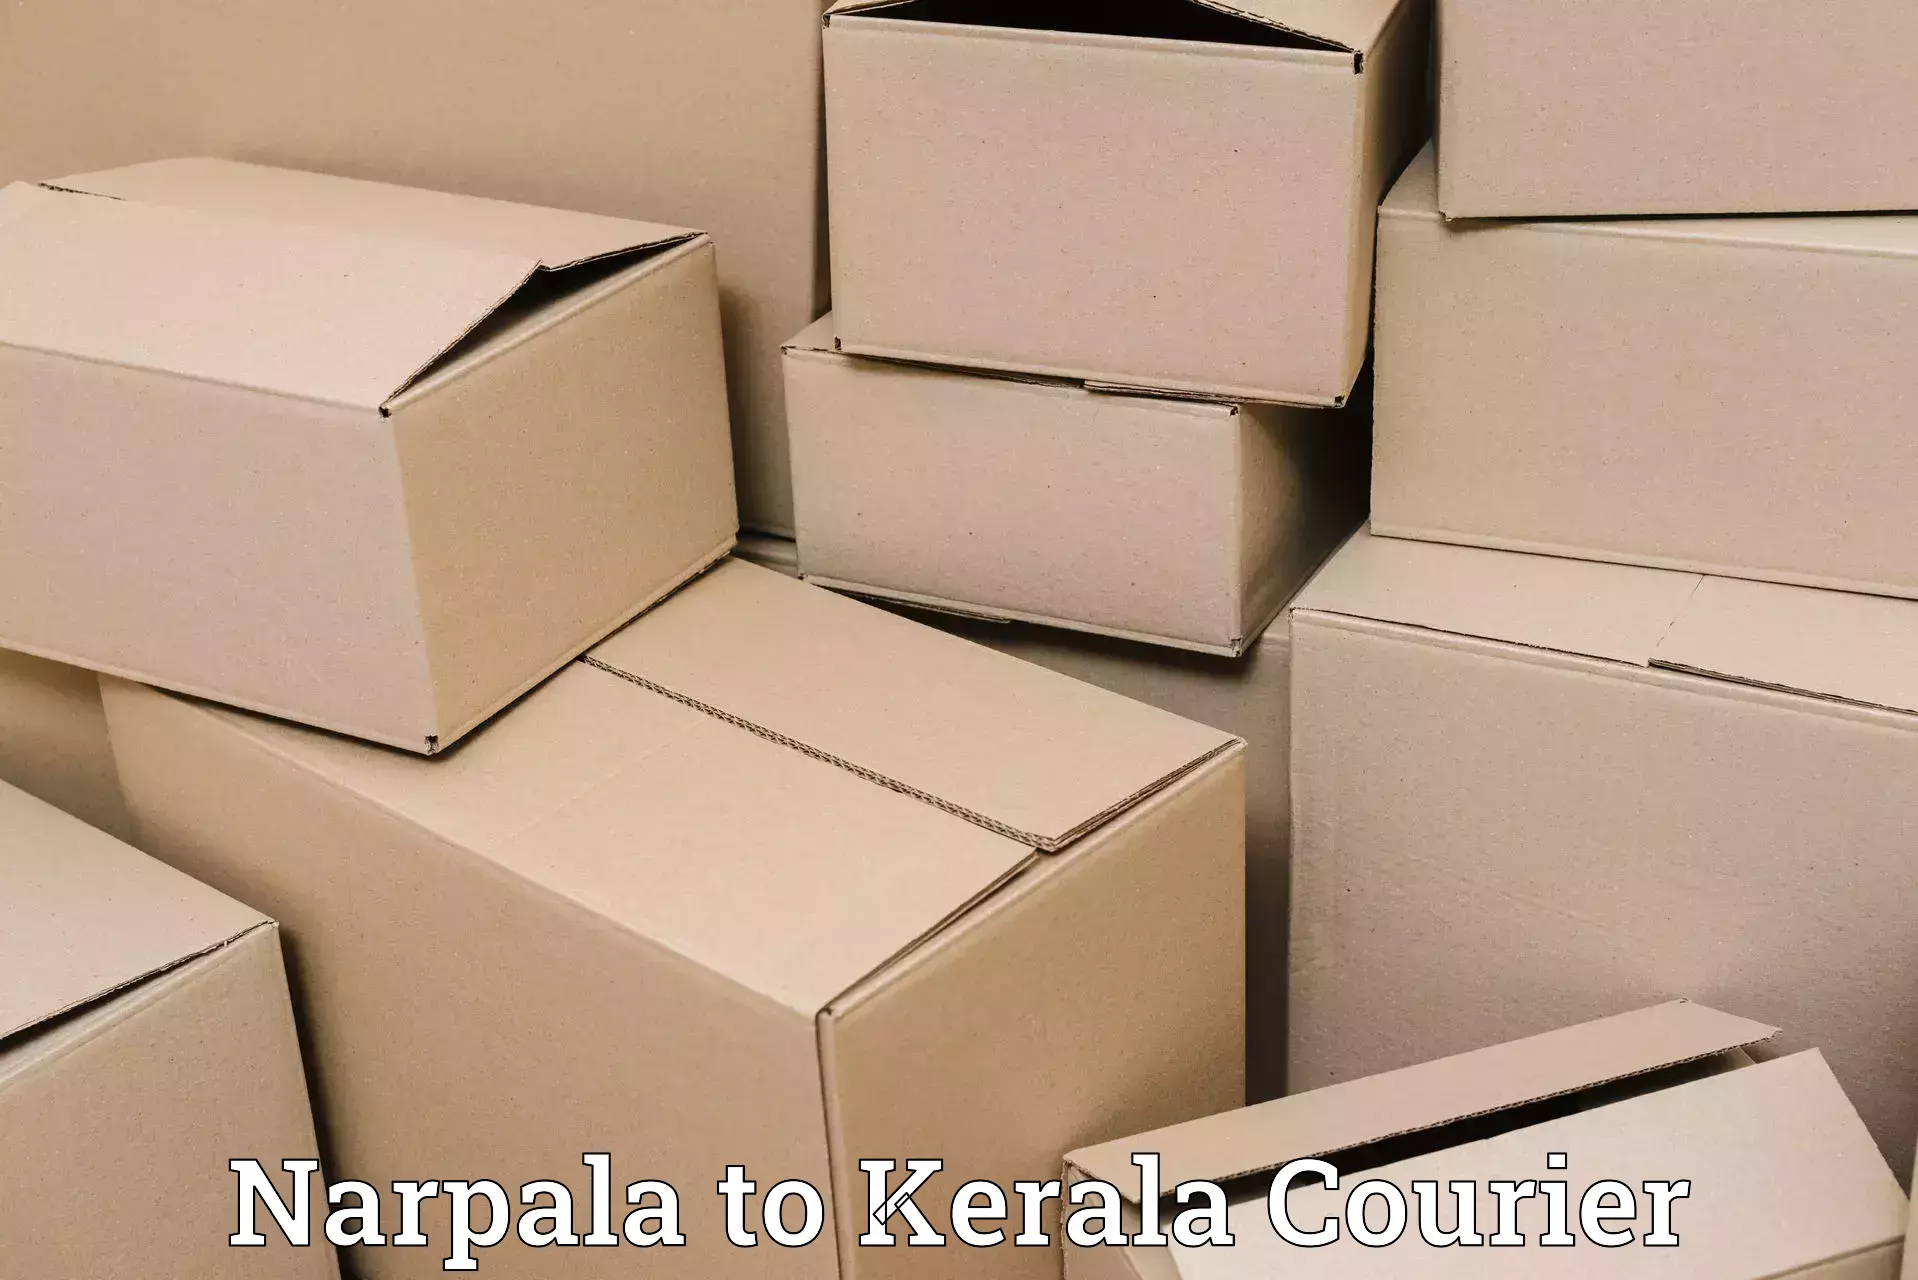 Express package handling Narpala to Mahatma Gandhi University Kottayam